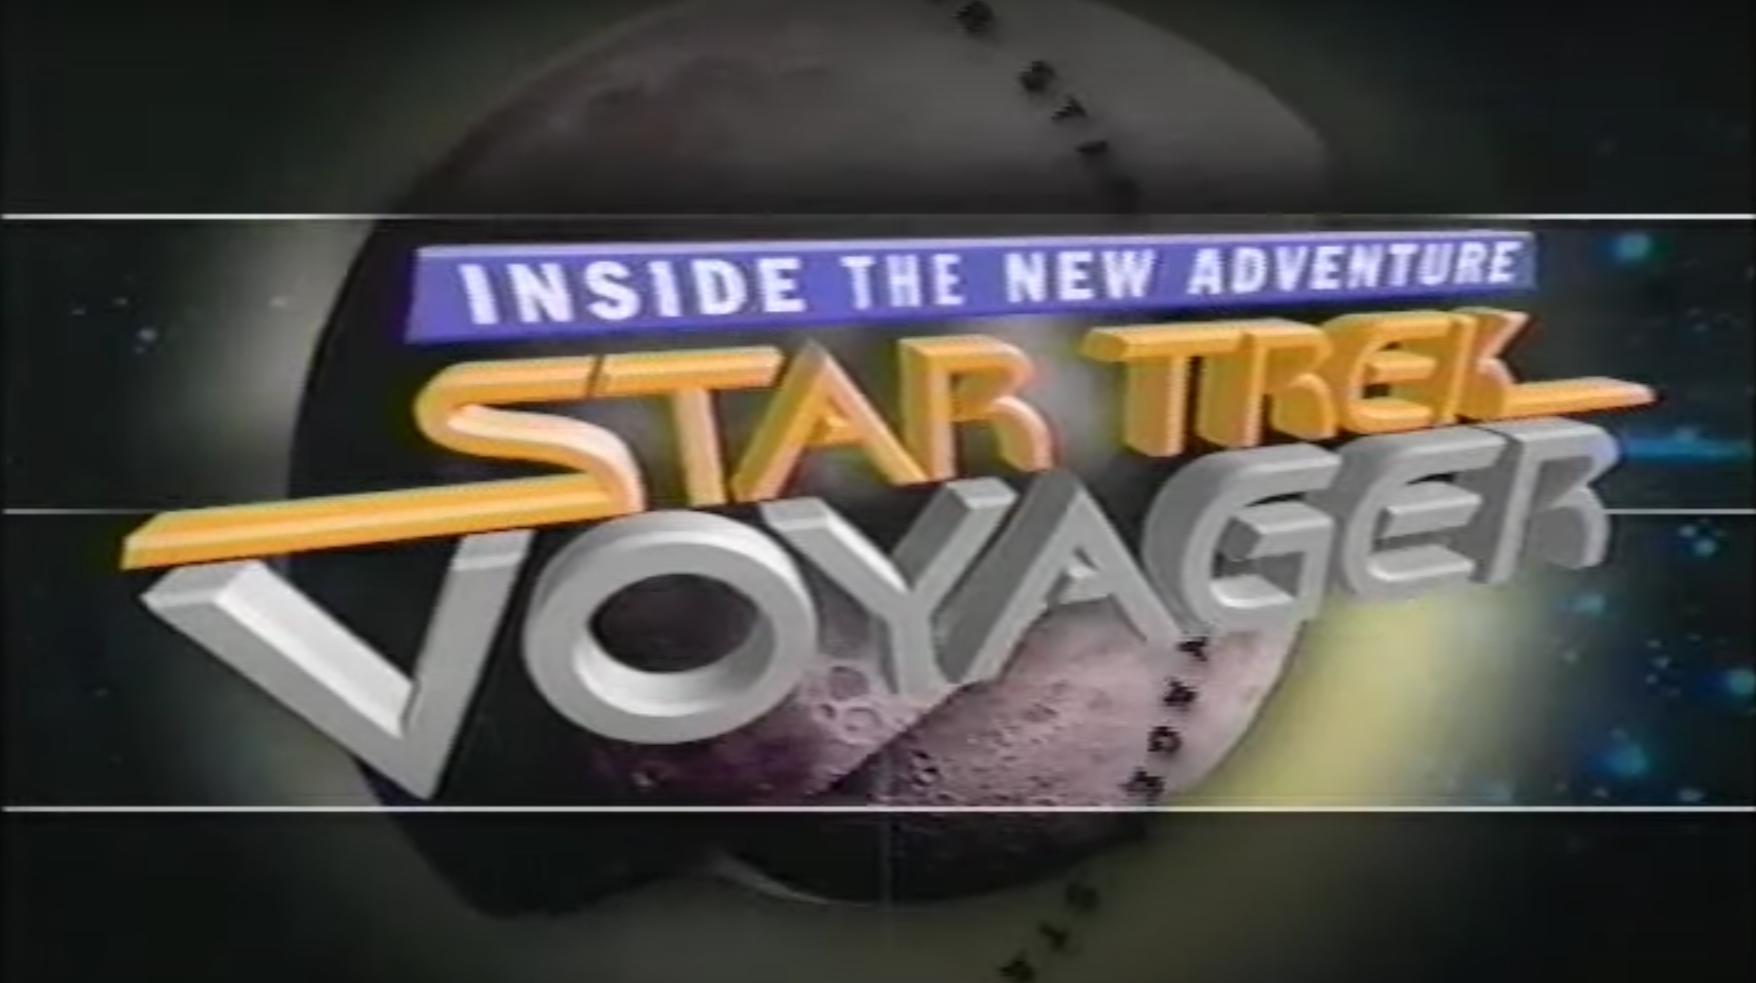 Inside the New Adventure: Star Trek - Voyager